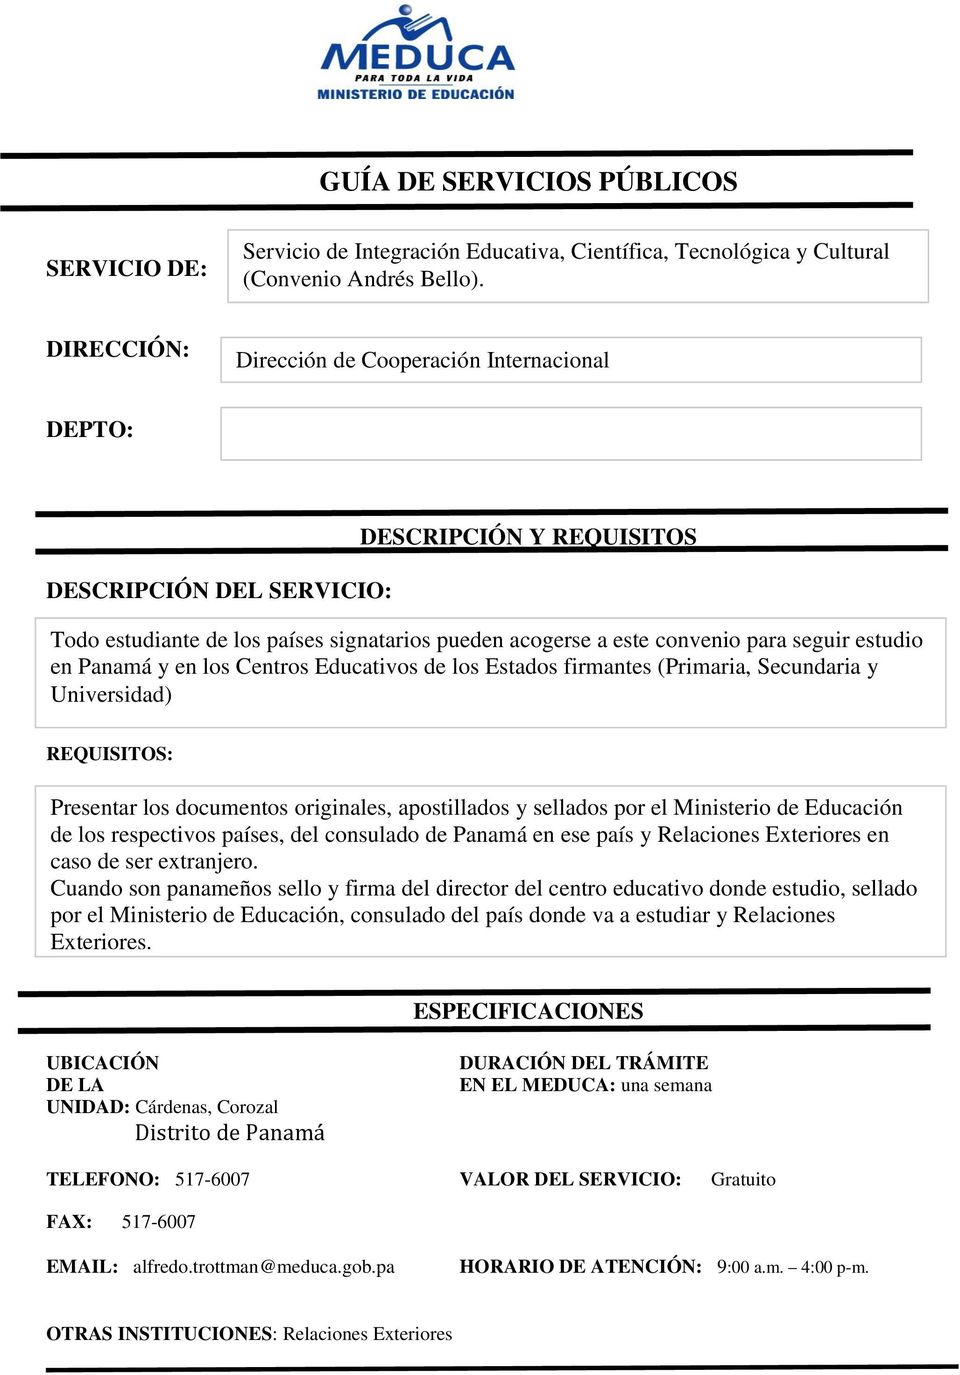 (Primaria, Secundaria y Universidad) Presentar los documentos originales, apostillados y sellados por el Ministerio de Educación de los respectivos países, del consulado de Panamá en ese país y